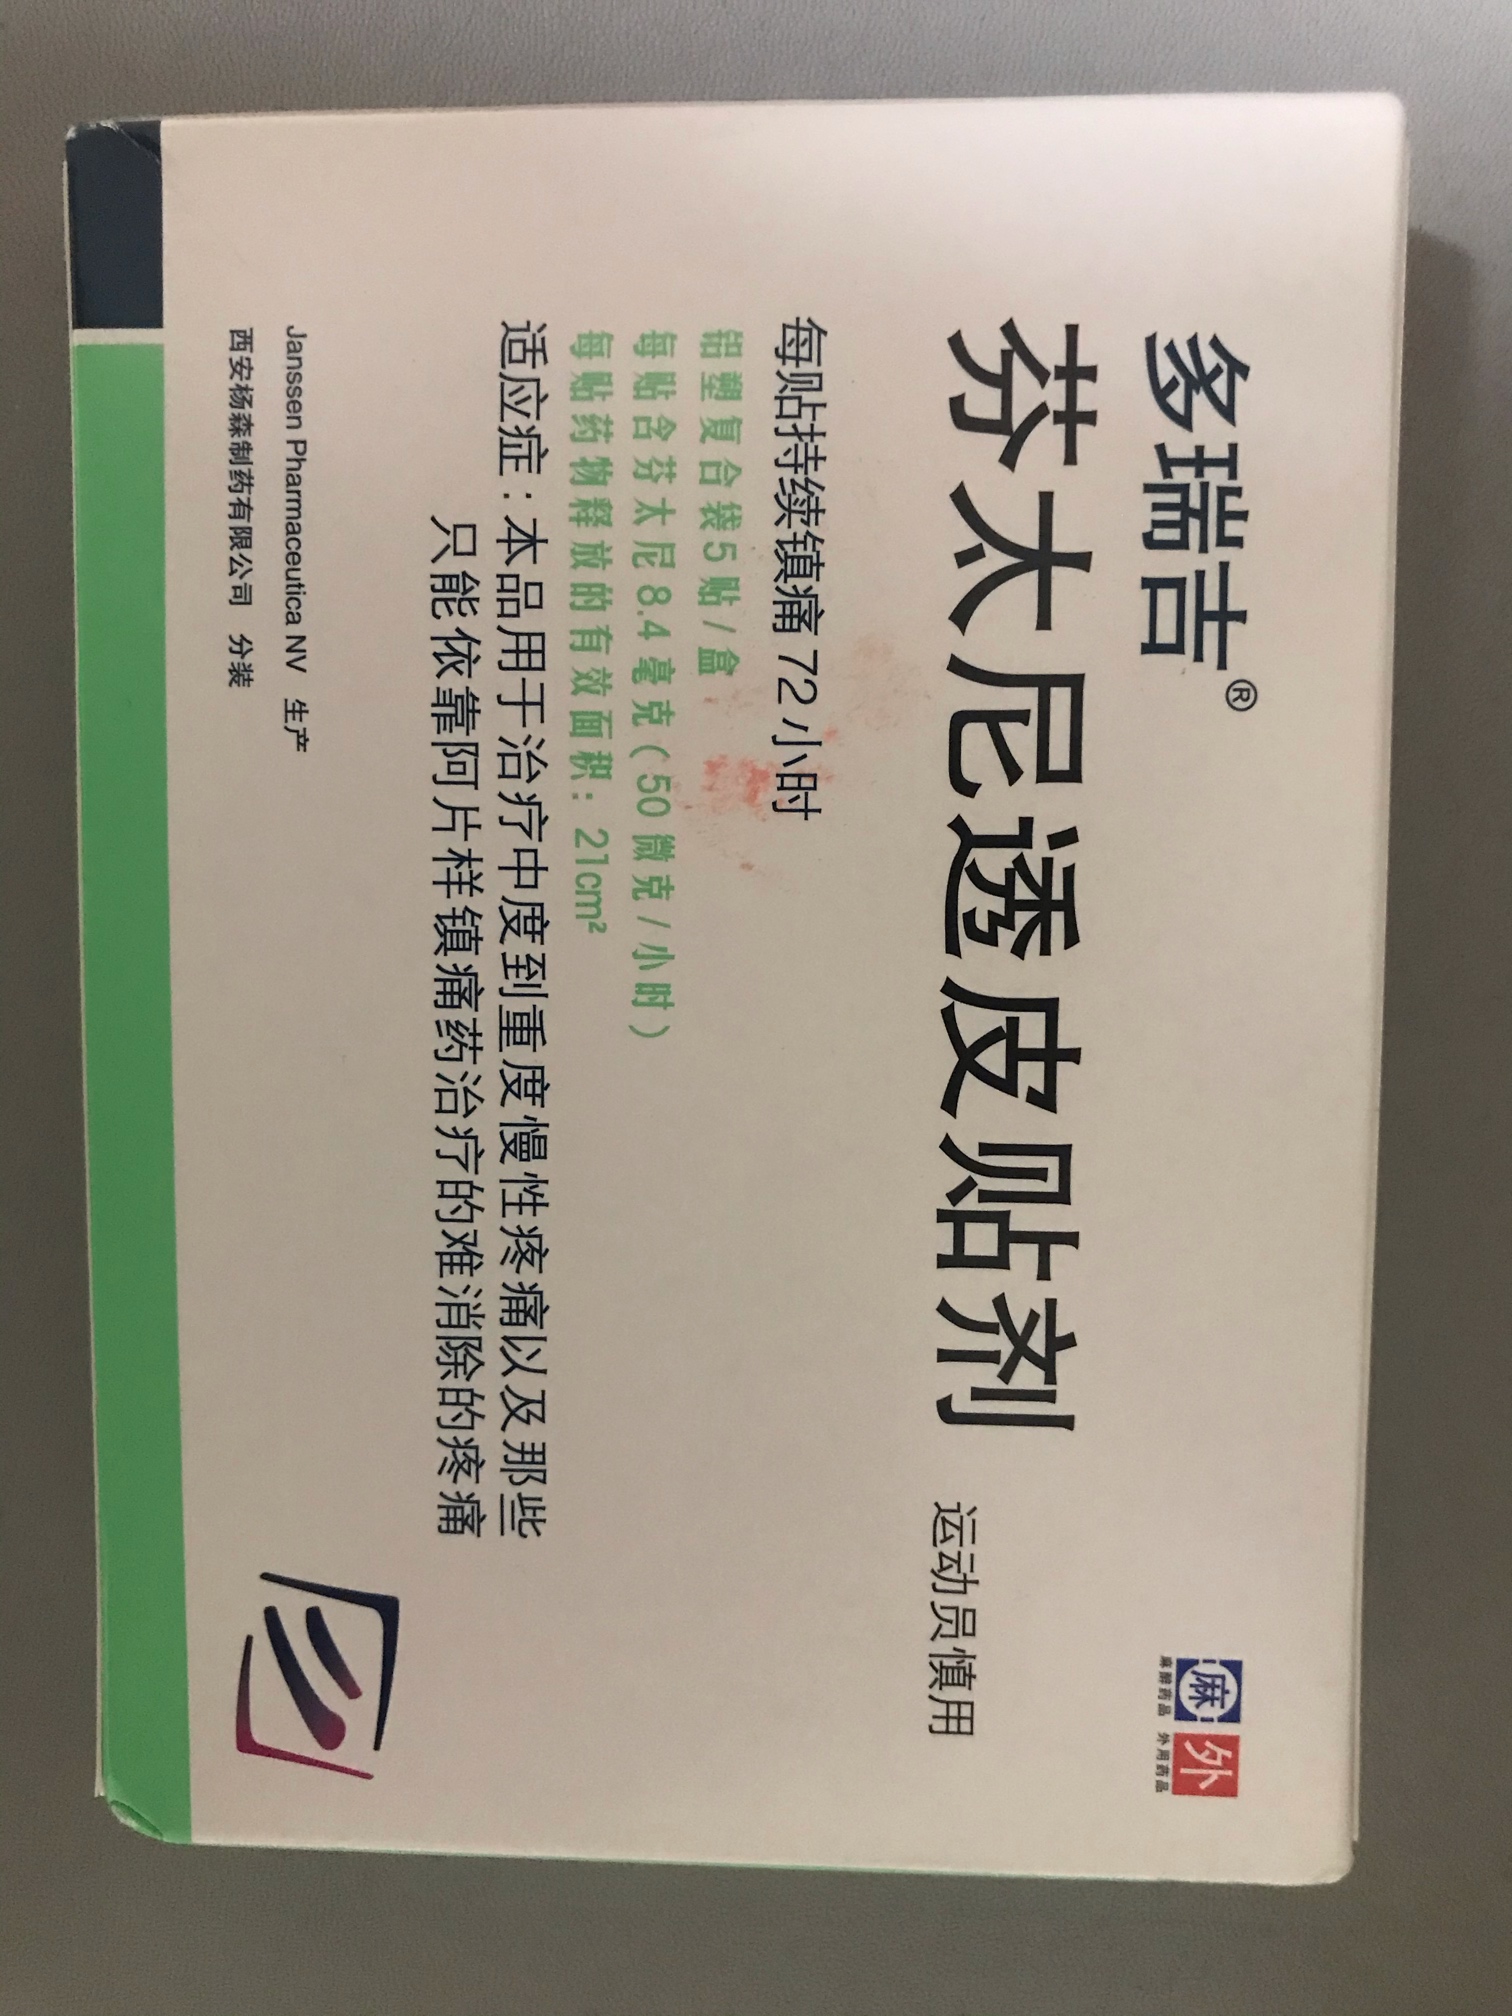 枸橼酸莫沙比利分散片（新络纳）-福乐康-产品信息